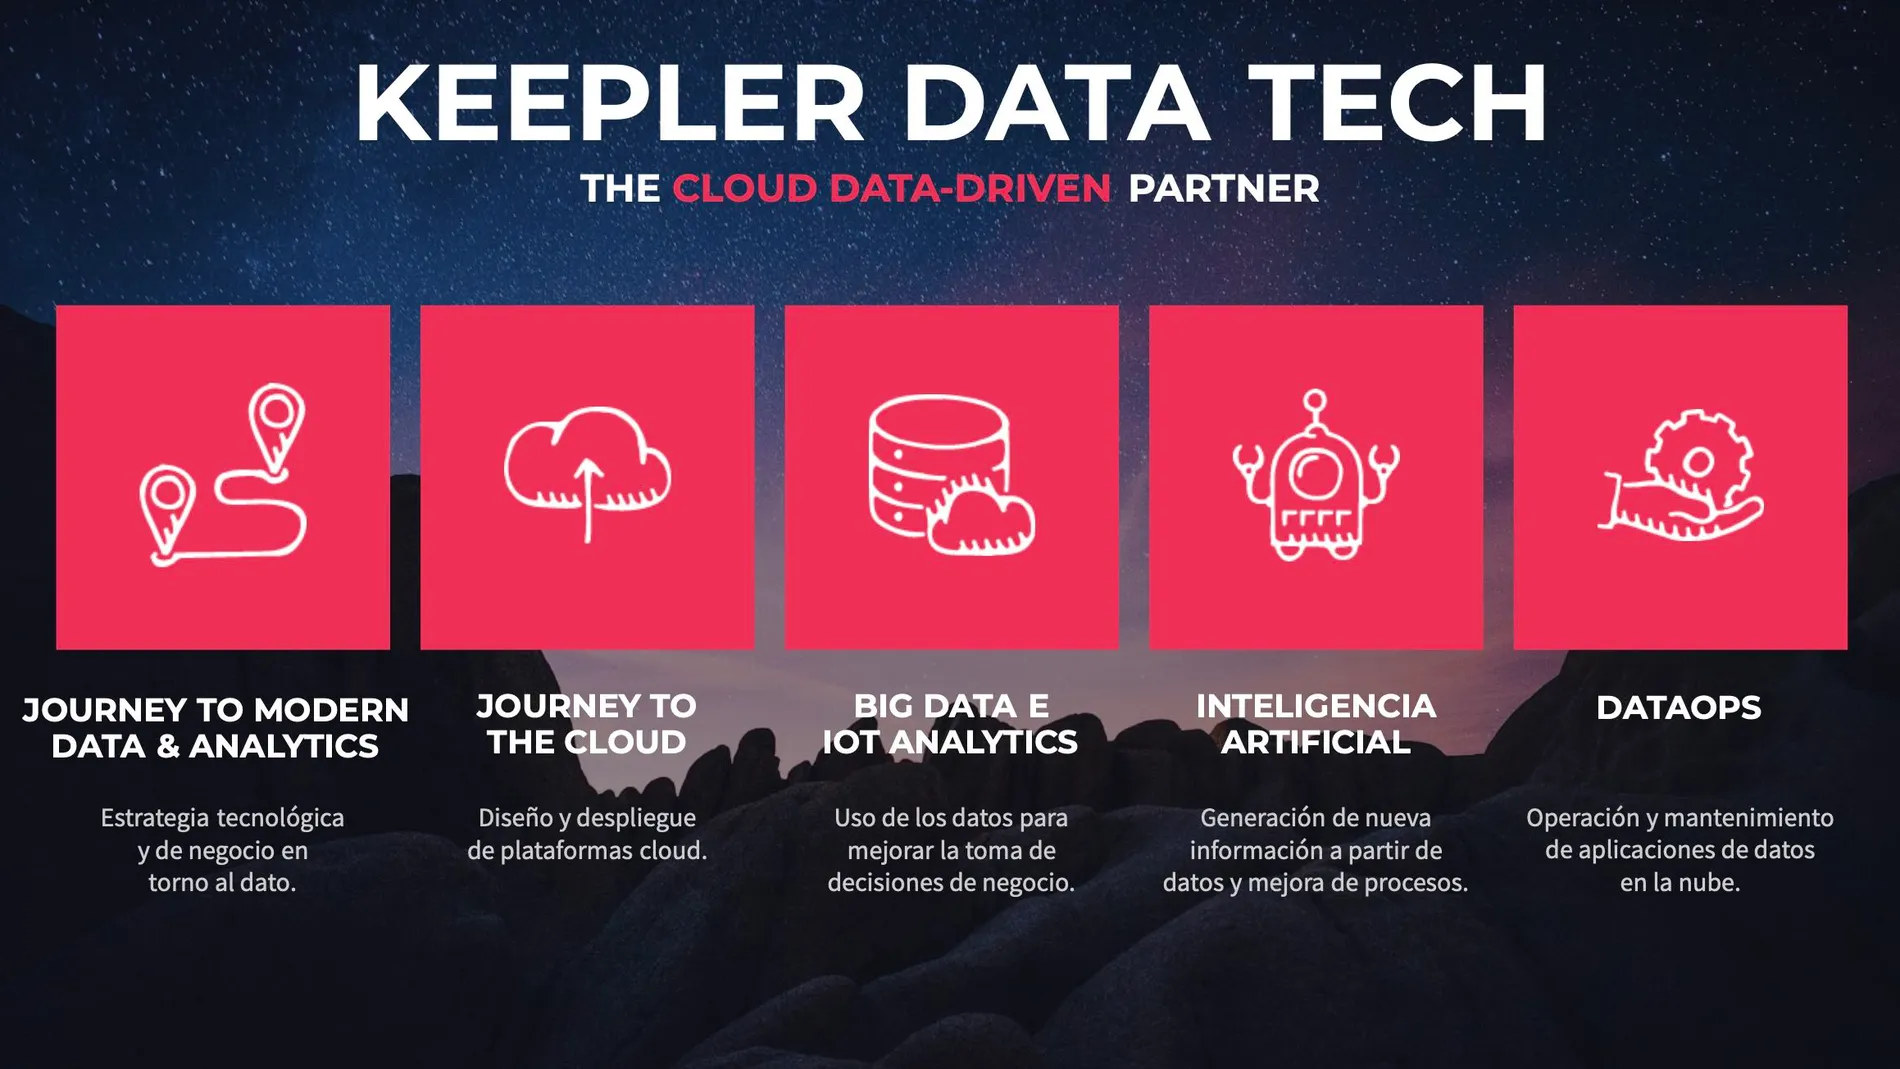 Keepler Data Tech es una empresa de software especializada en el diseño, construcción y operación de Productos de Datos